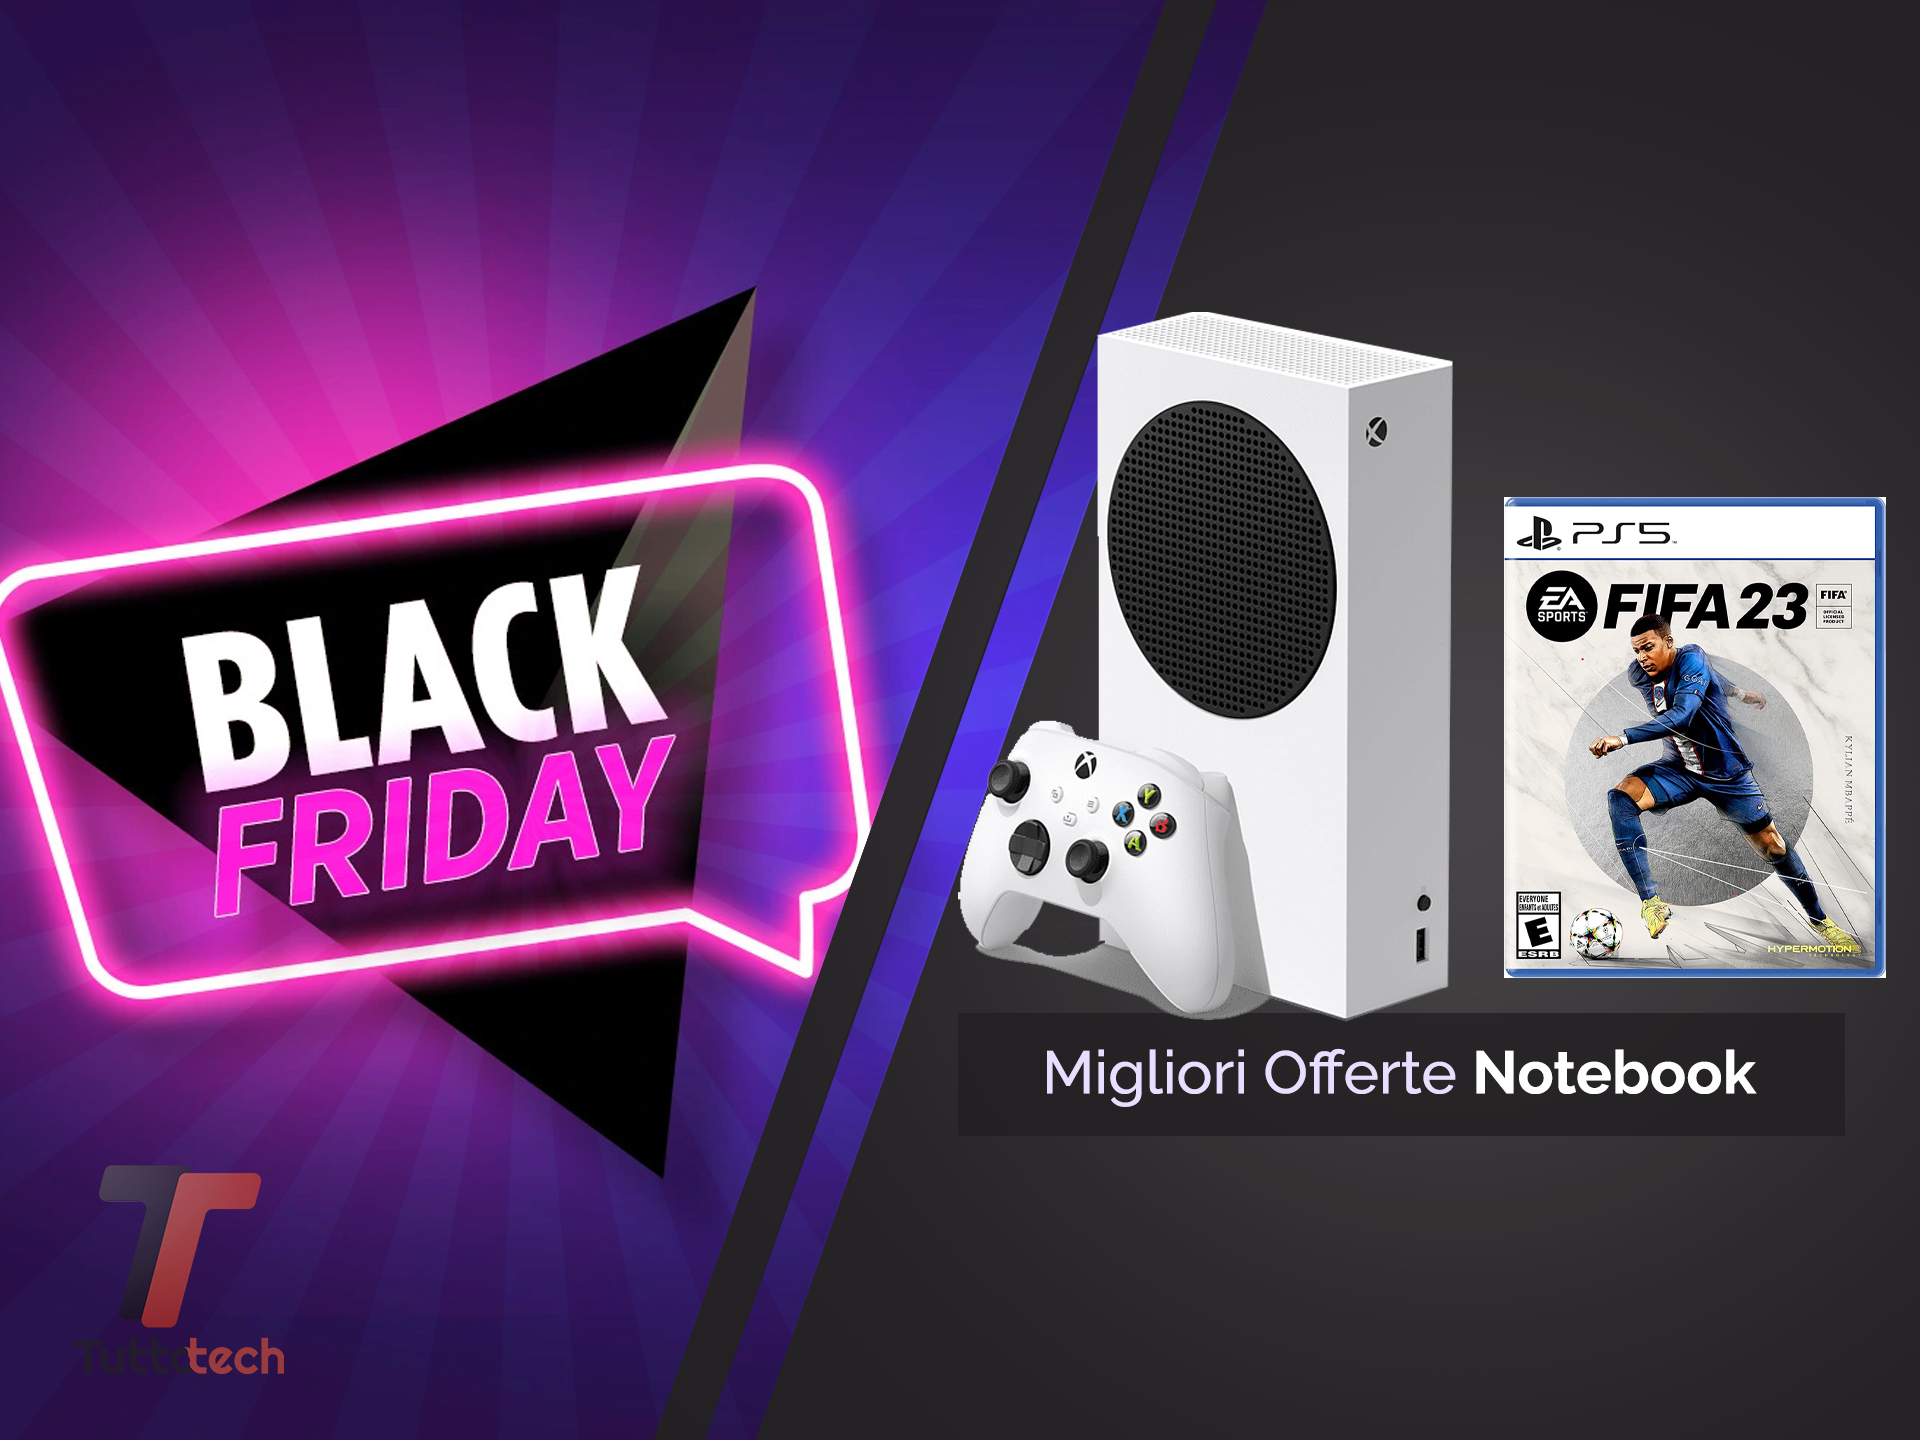 Giochi PS5 da 9.99€: offerte Black Friday con sconti su God of War, Horizon  e Spider-Man